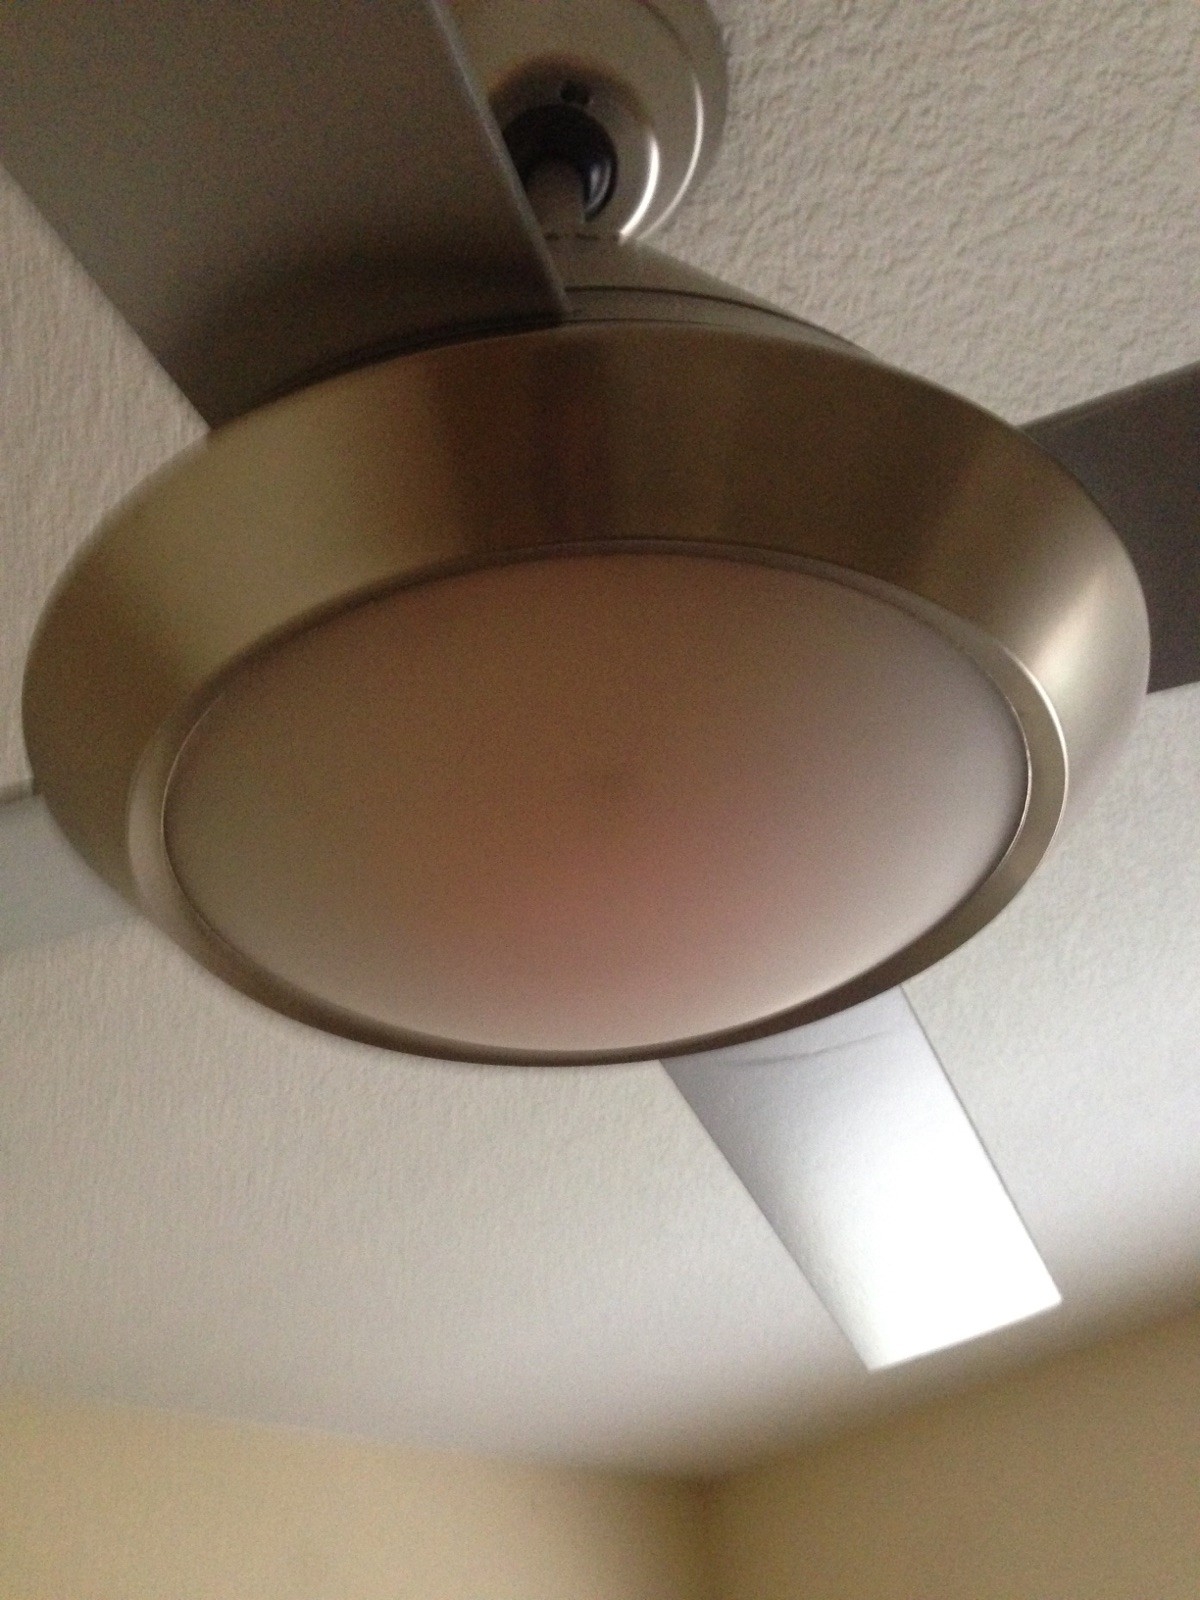 Change Ceiling Fan Light Bulb1200 X 1600